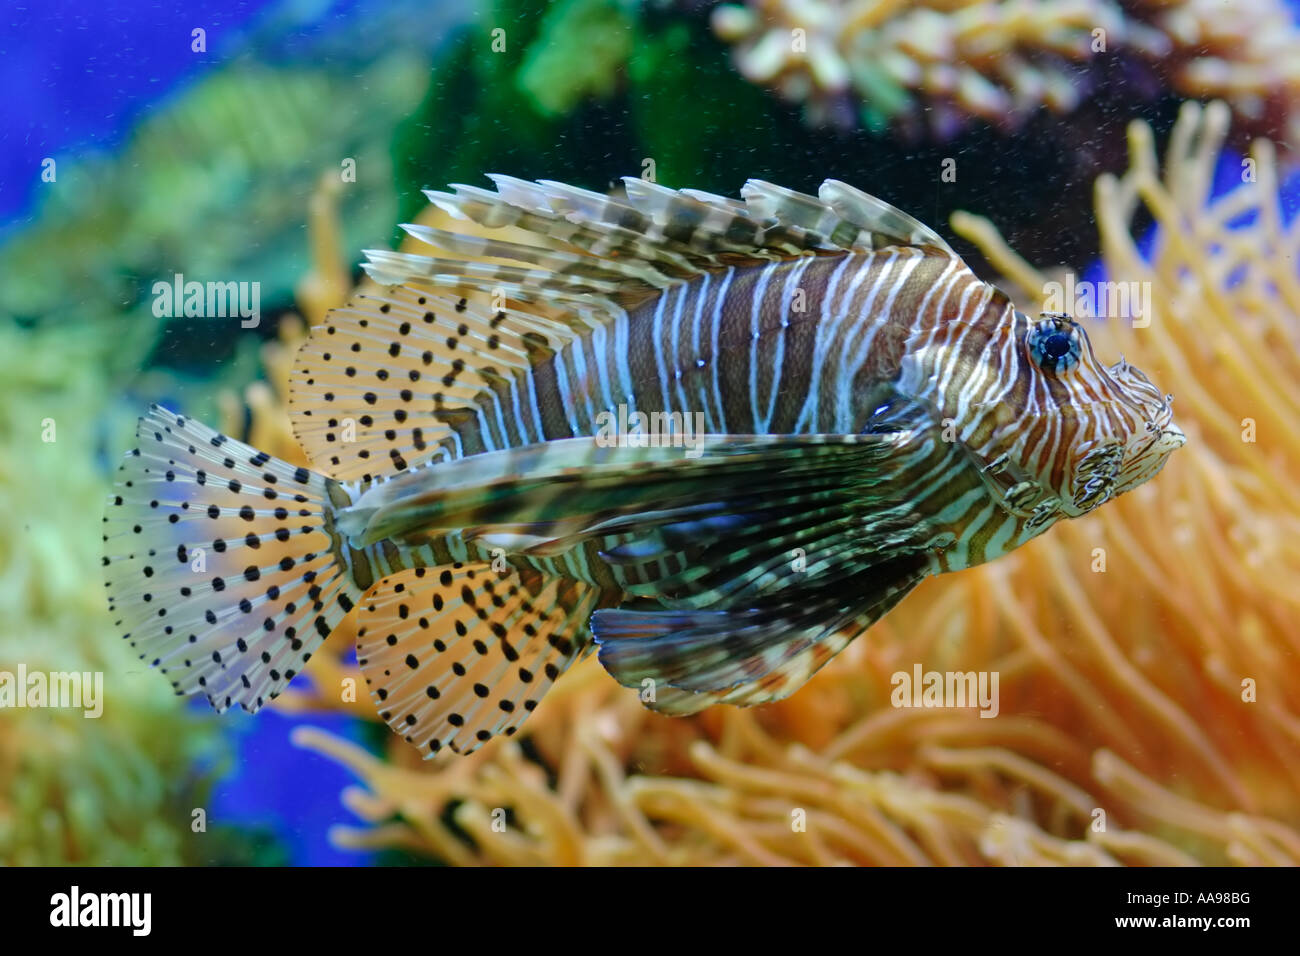 Lionfish in aquarium Stock Photo